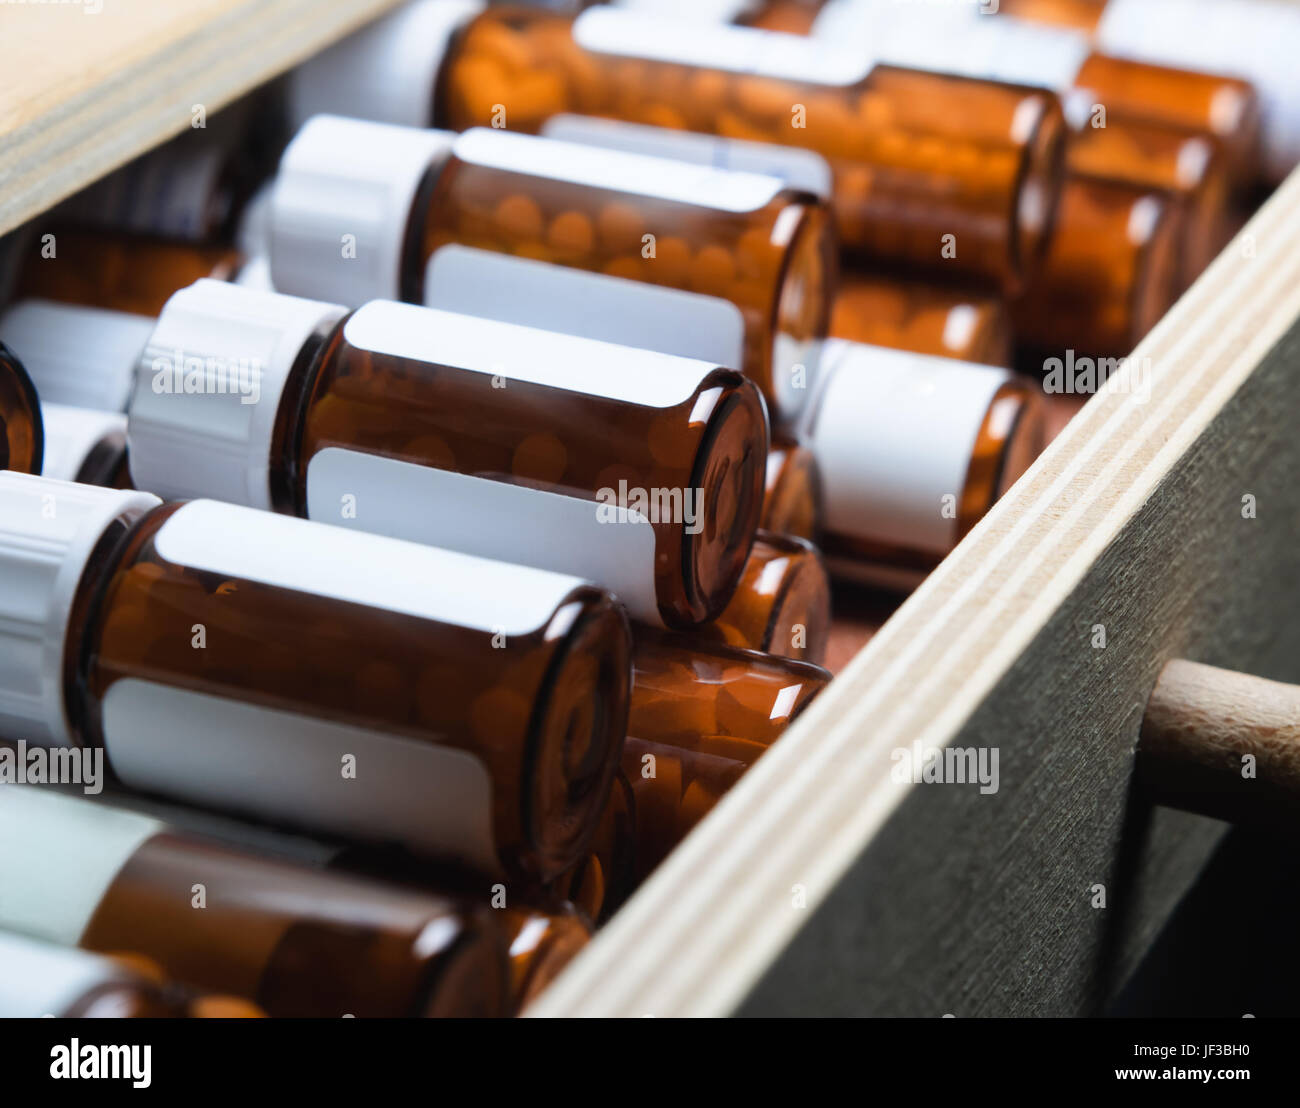 Un cajón abierto, lleno de muchas botellas de vidrio ámbar con remedios homeopáticos. Orientación horizontal (horizontal). Foto de stock